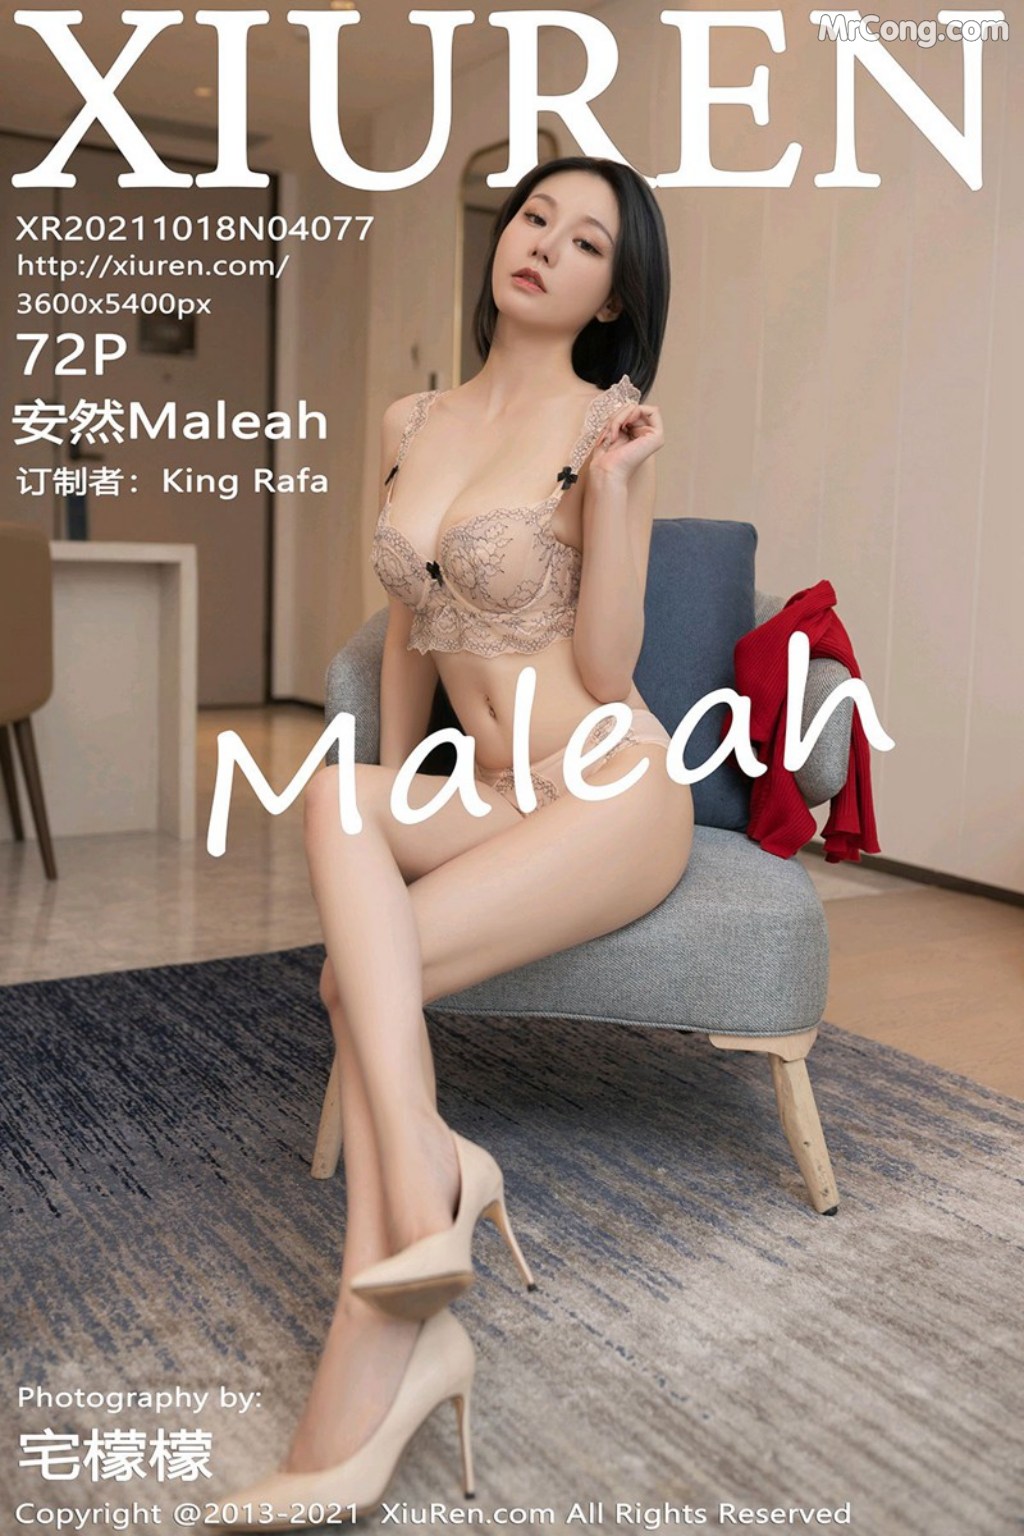 XIUREN No.4077: 安然Maleah (73 photos) photo 4-12